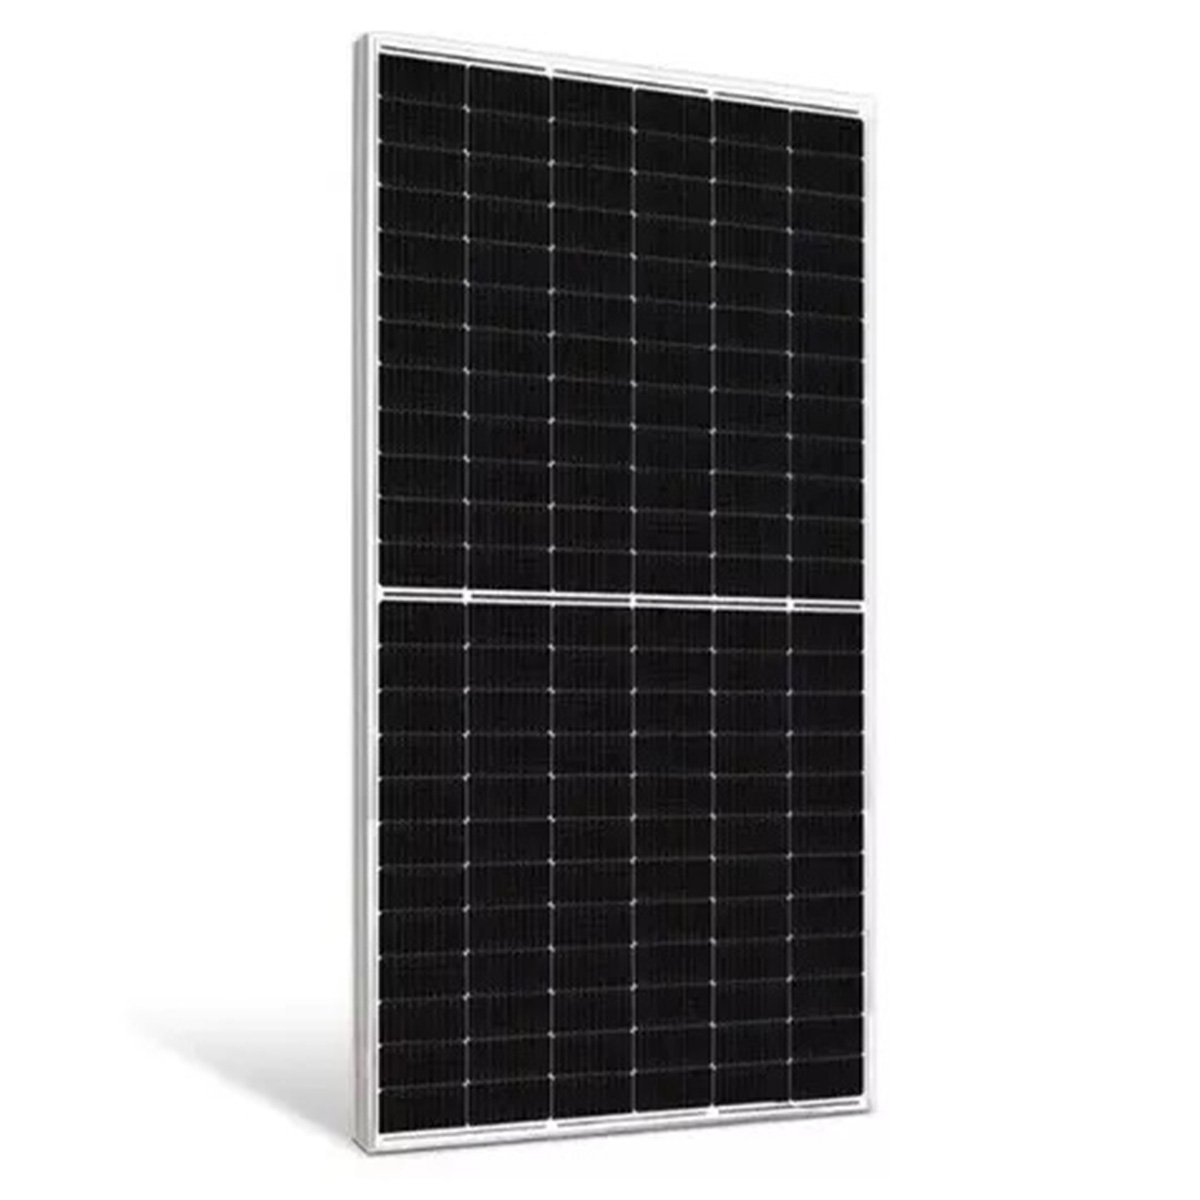 Painel Solar Placa Fotovoltaica 550W 2 Metros Monocristalino Energia Renovavel Economia Solar SA1821 - 1